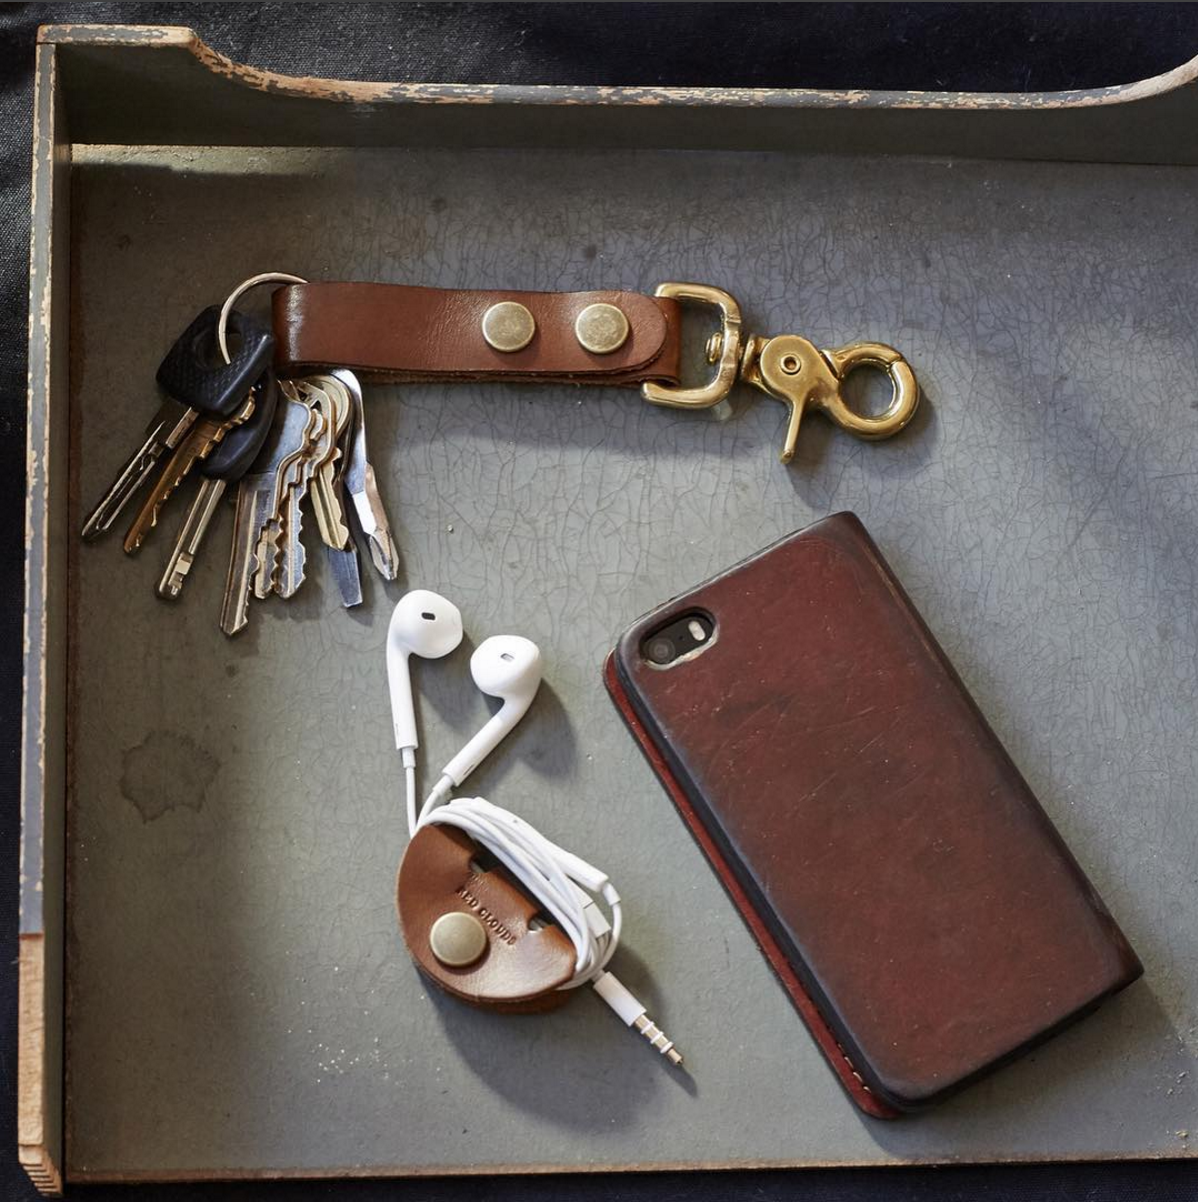 Leather Key Case - Saddle Tan